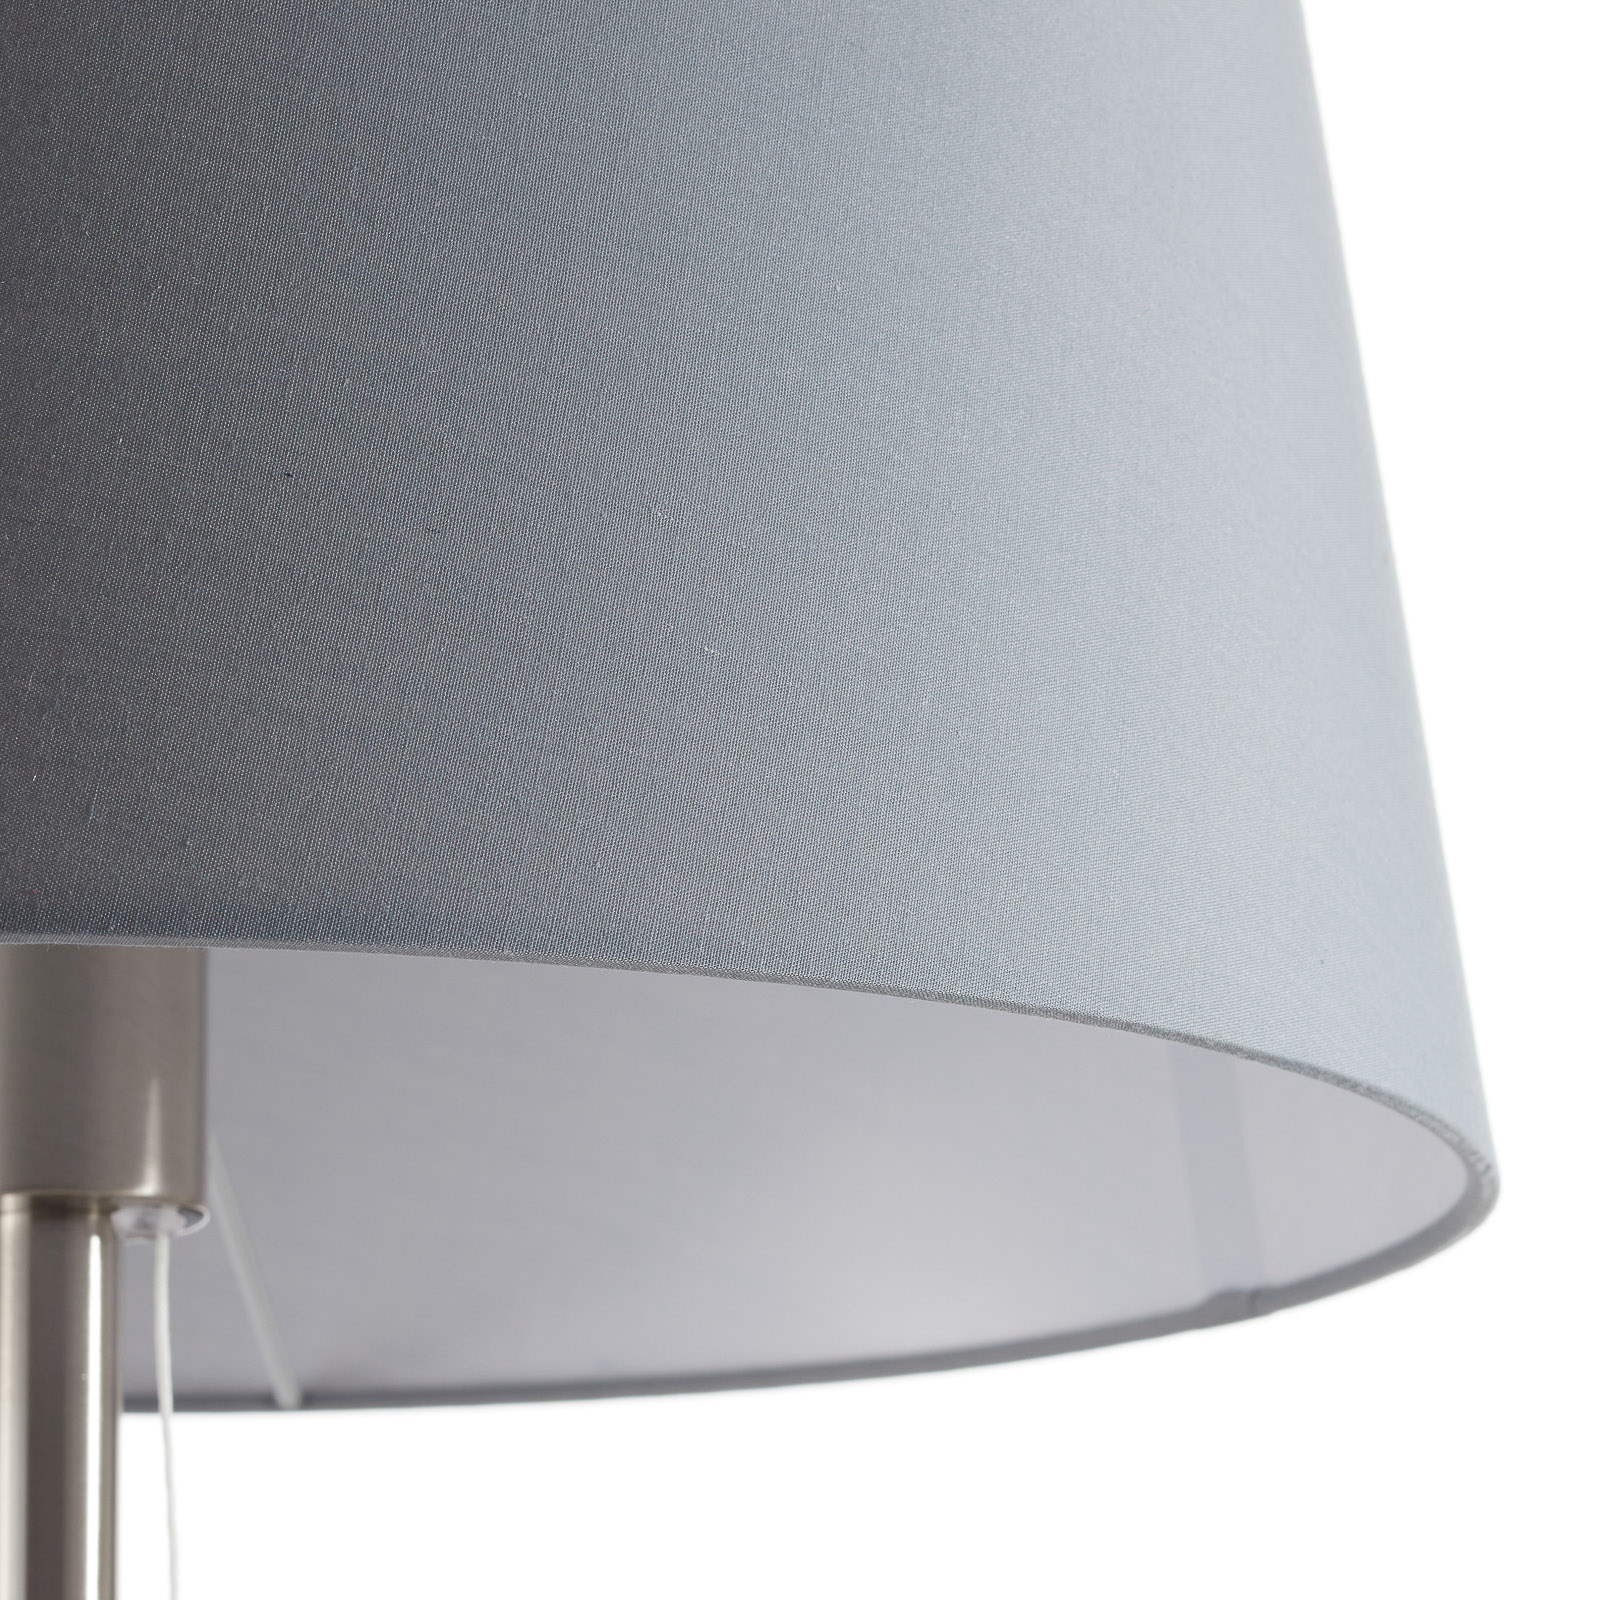 Textiel-vloerlamp Layer met leeslamp grijs